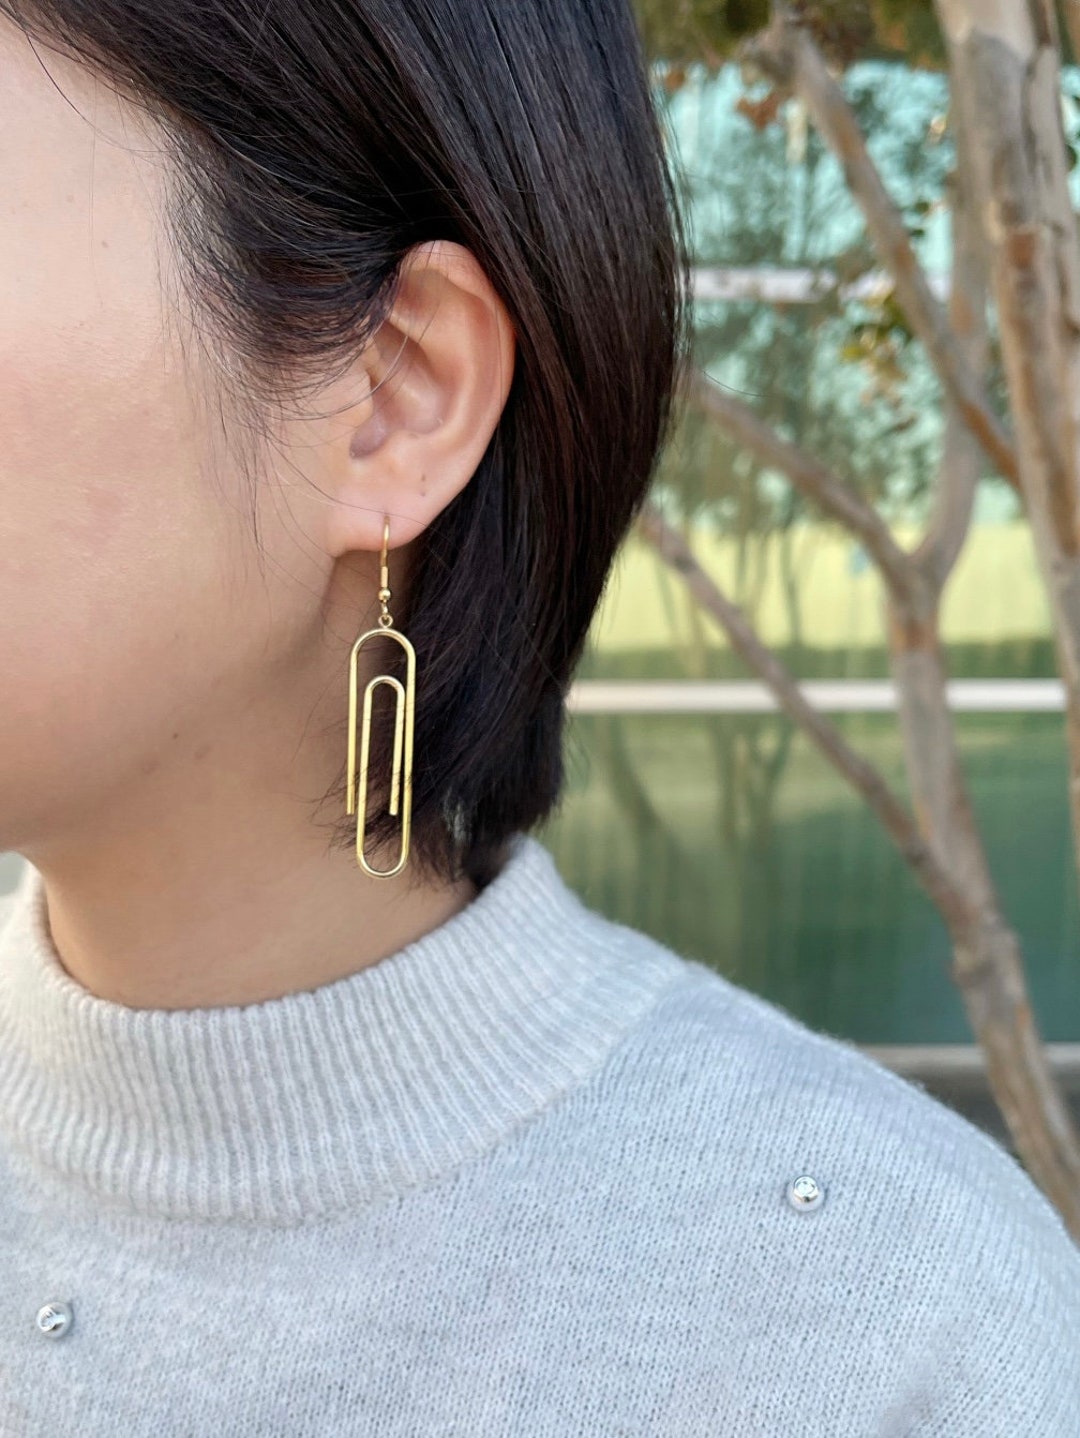 Paperclip Earrings, Chunky Earrings, Wire Dangle Earrings Stainless Steel  Drop Earrings Minimalist Earrings Art Gift for Her 1 Pair 